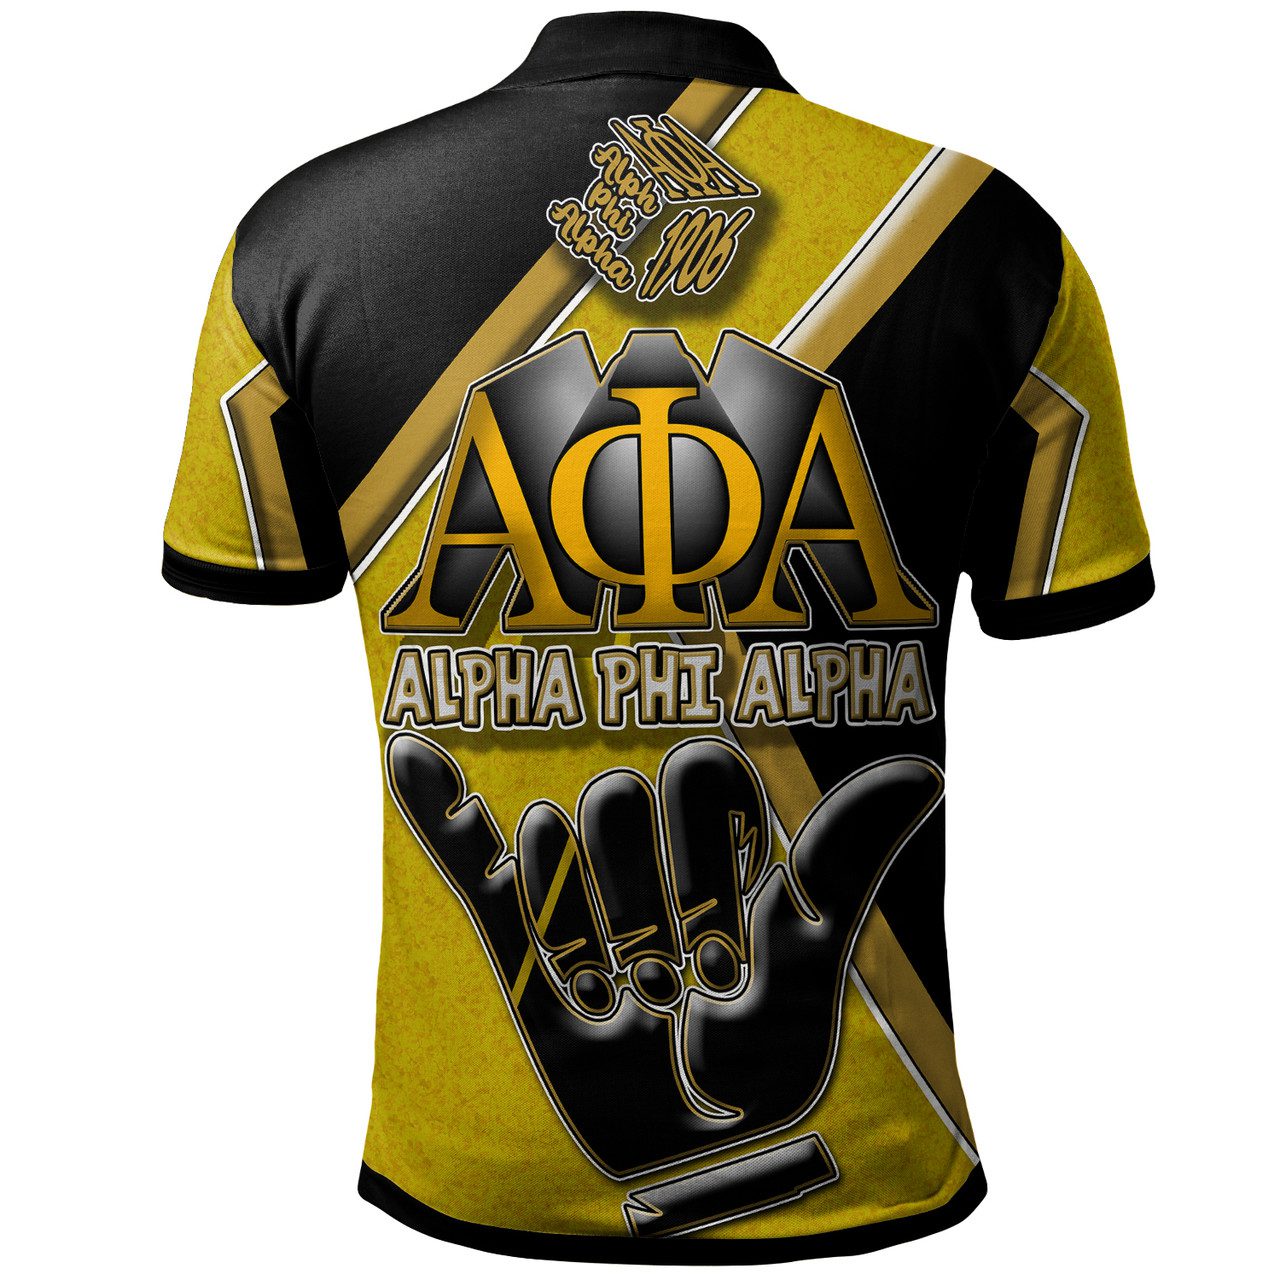 Alpha Phi Alpha Polo Shirt – Alpha Phi Alpha Fraternity Hand Polo Shirt